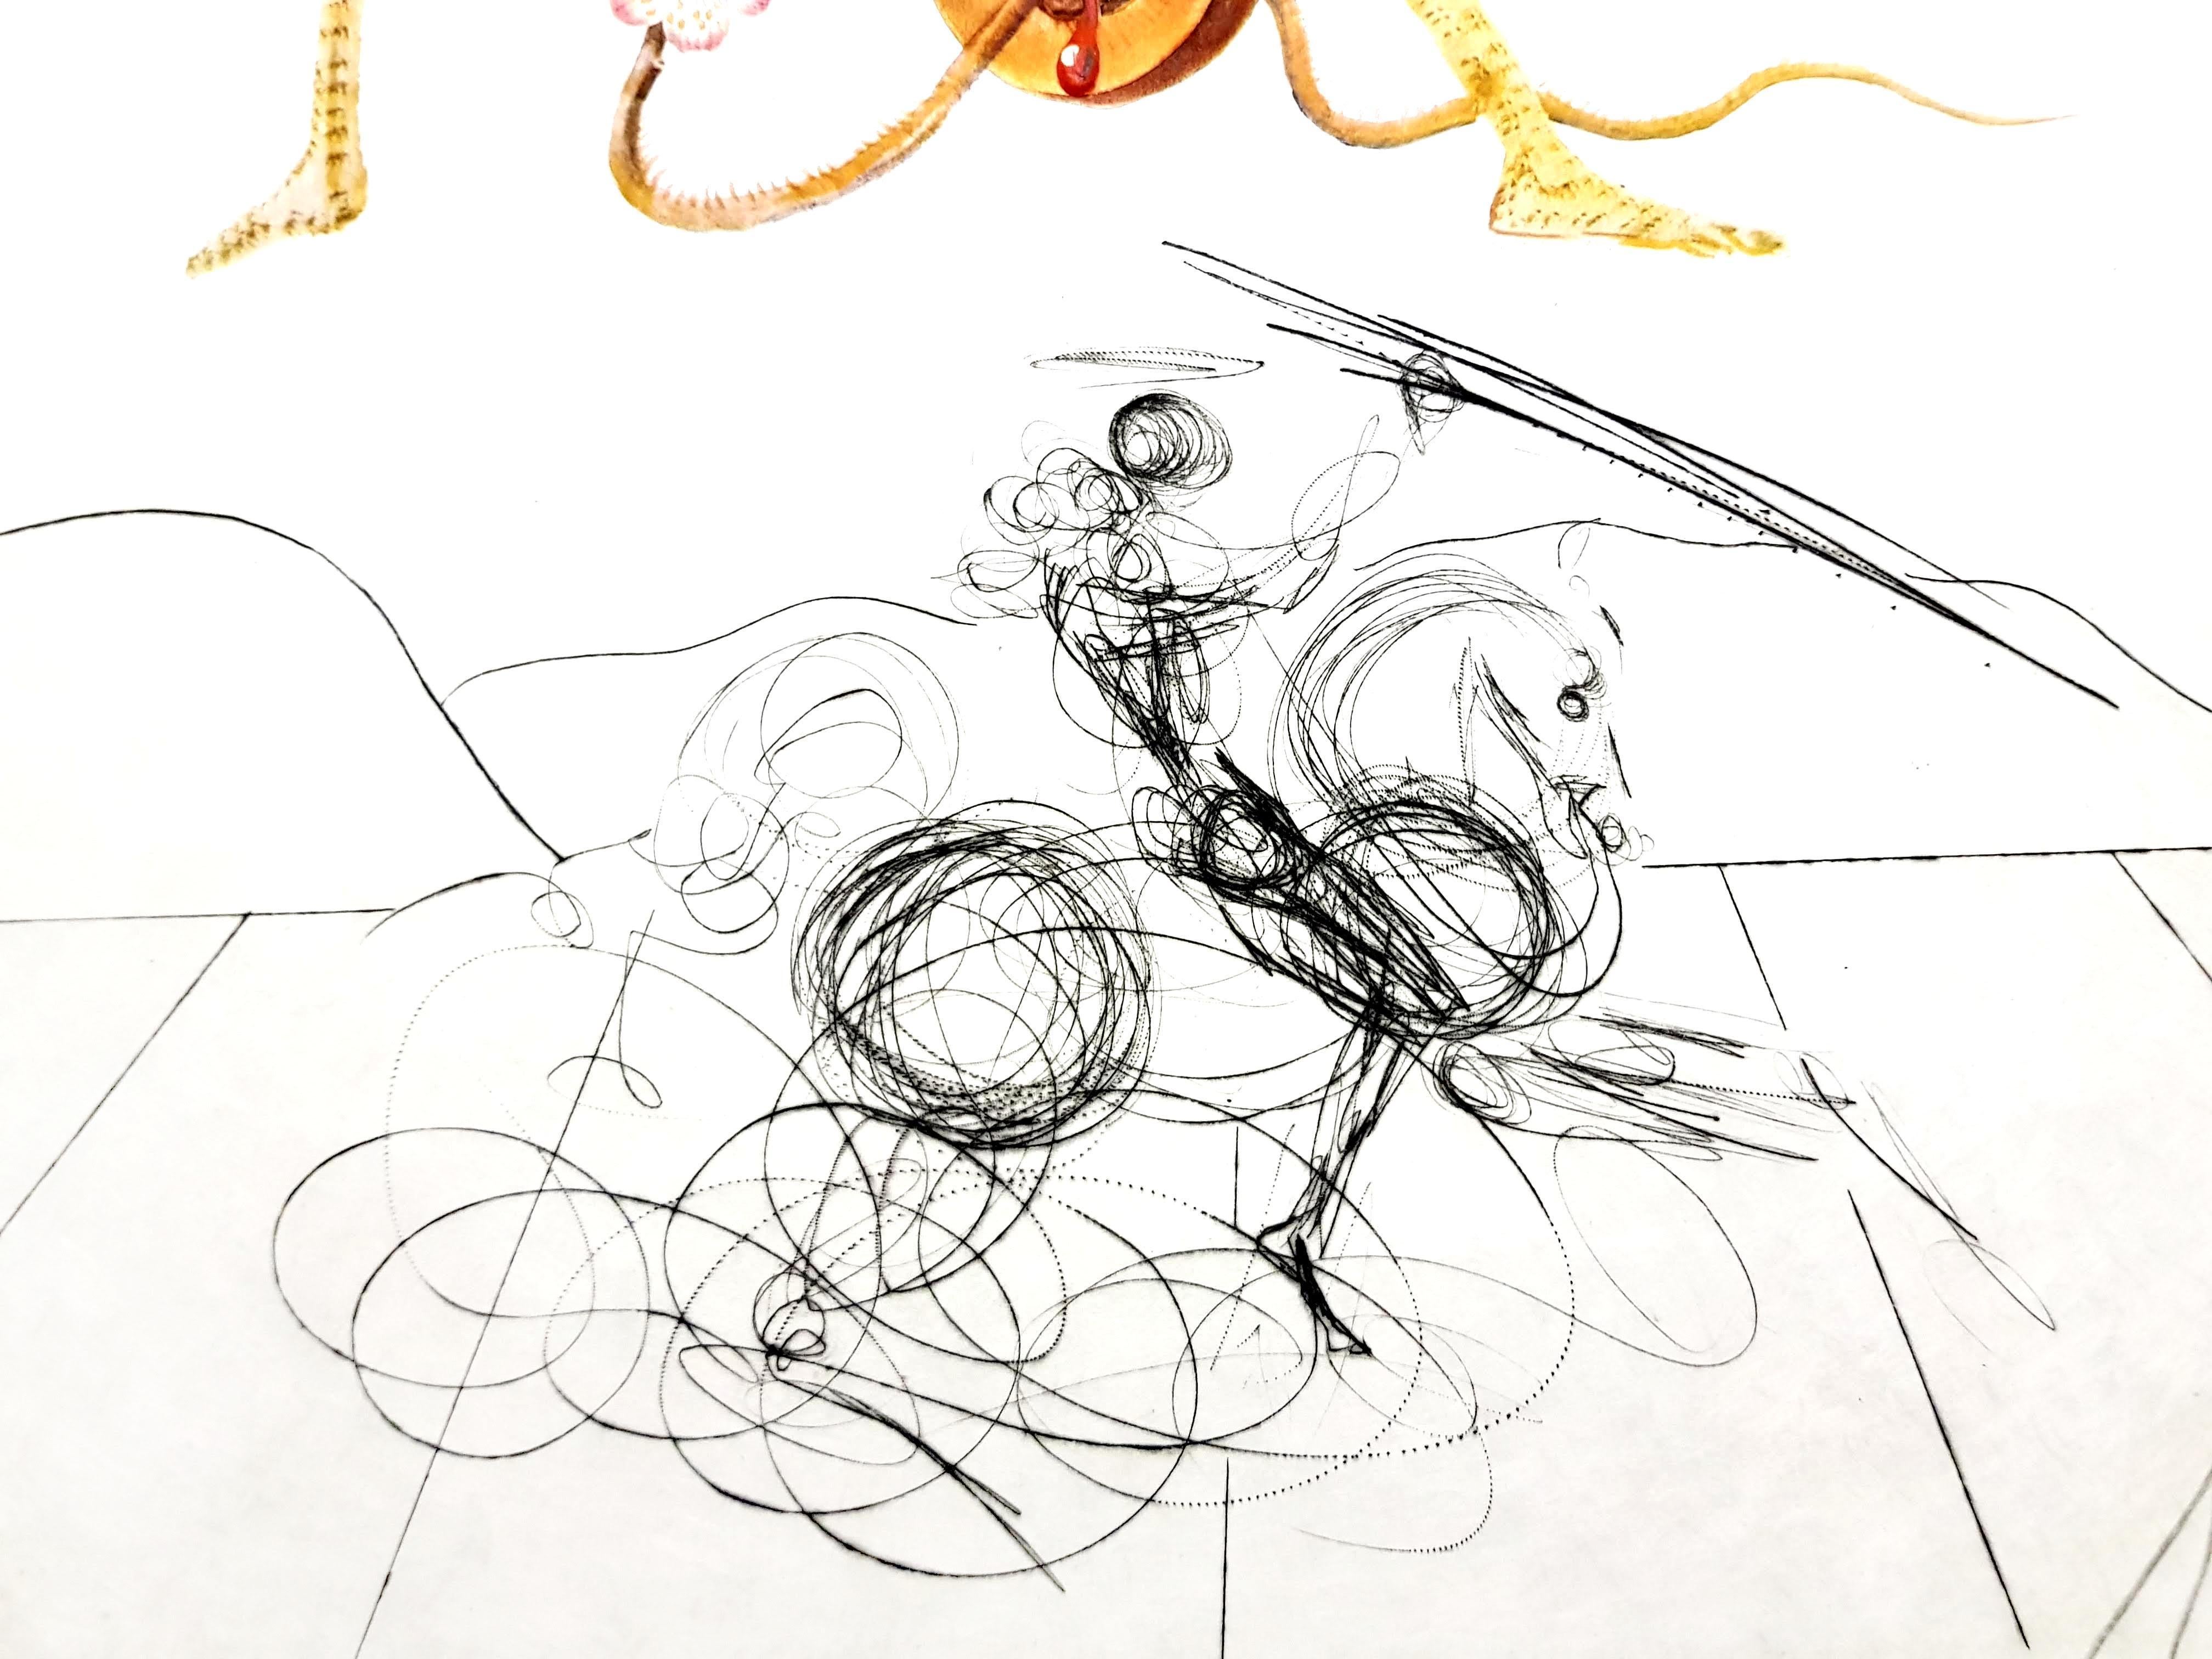 Salvador Dali - Aprikose - Original Handsignierte Lithographie
1969
Abmessungen: S. 57 x 37 cm
Blatt: 75 x 56 cm 
Handsigniert, EA (Epreuve d'Artiste)  abgesehen von der Auflage von 200 Stück.
Papier : Japanpapier
Ausgezeichneter Zustand
Referenz: